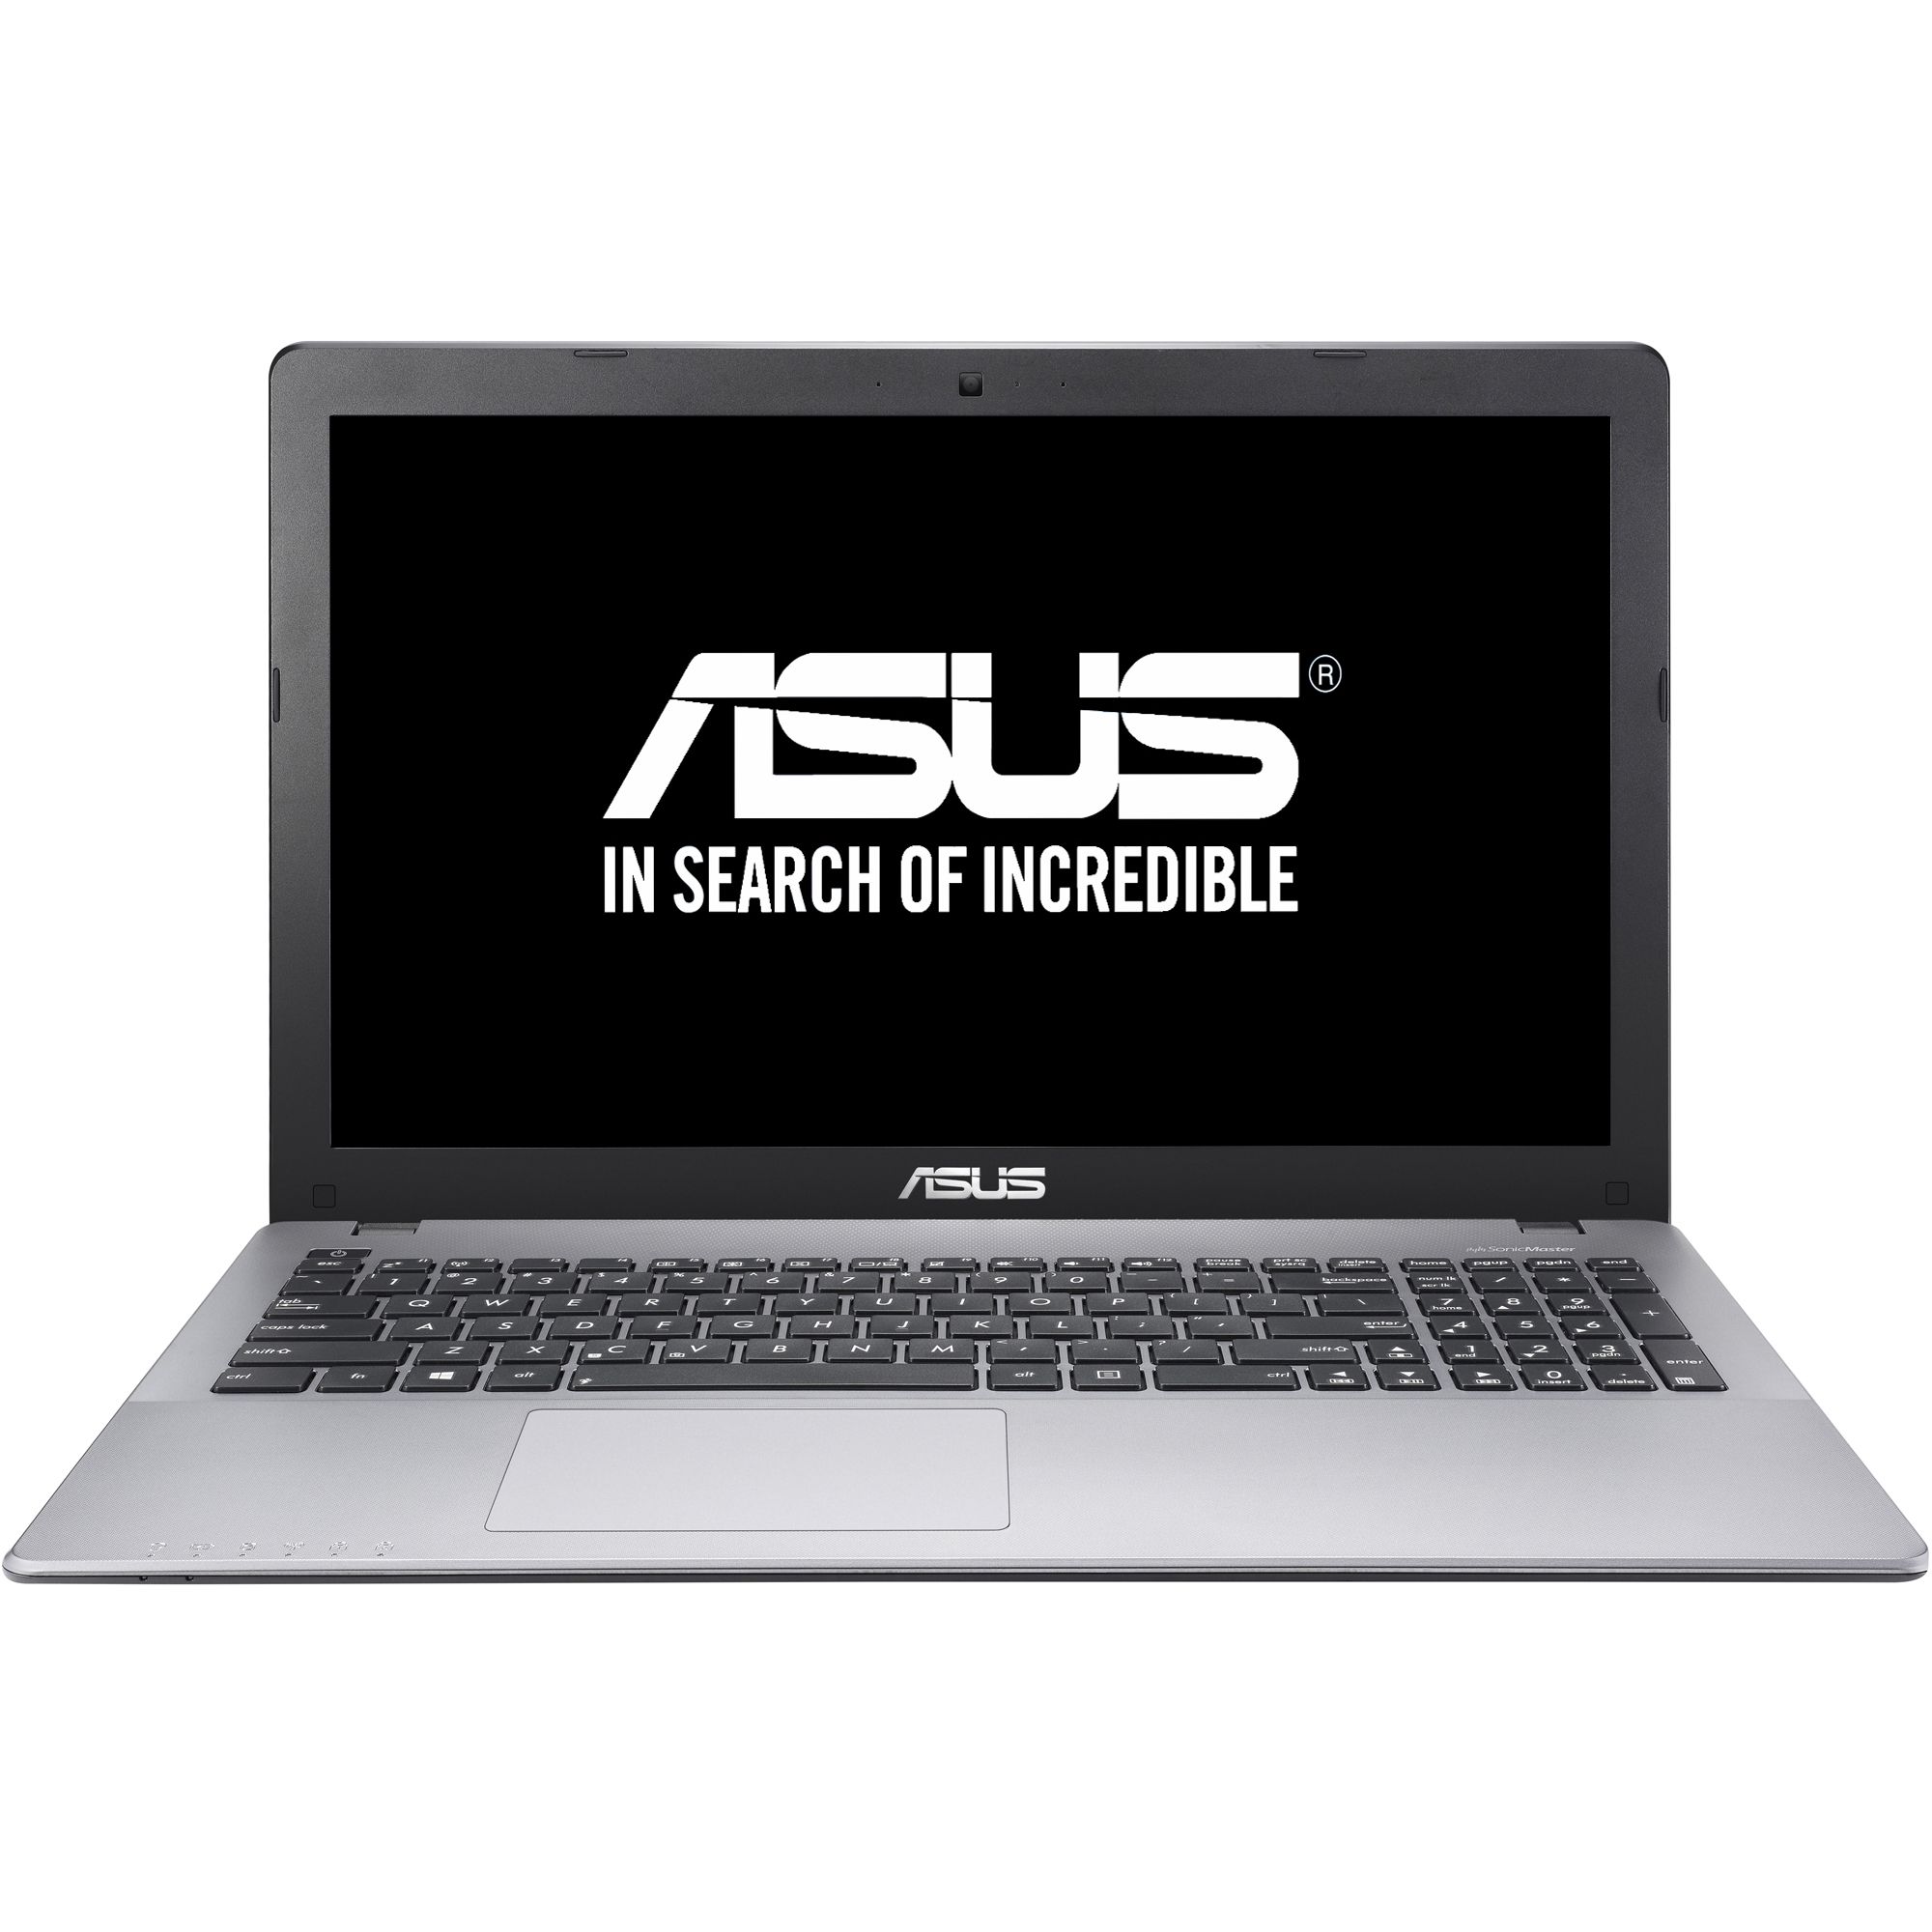  Laptop Asus X550JK-XX166D, Intel Core i7-4710HQ, 8GB DDR3, HDD 1TB, nVidia GeForce GTX 850M 2GB, Free DOS 